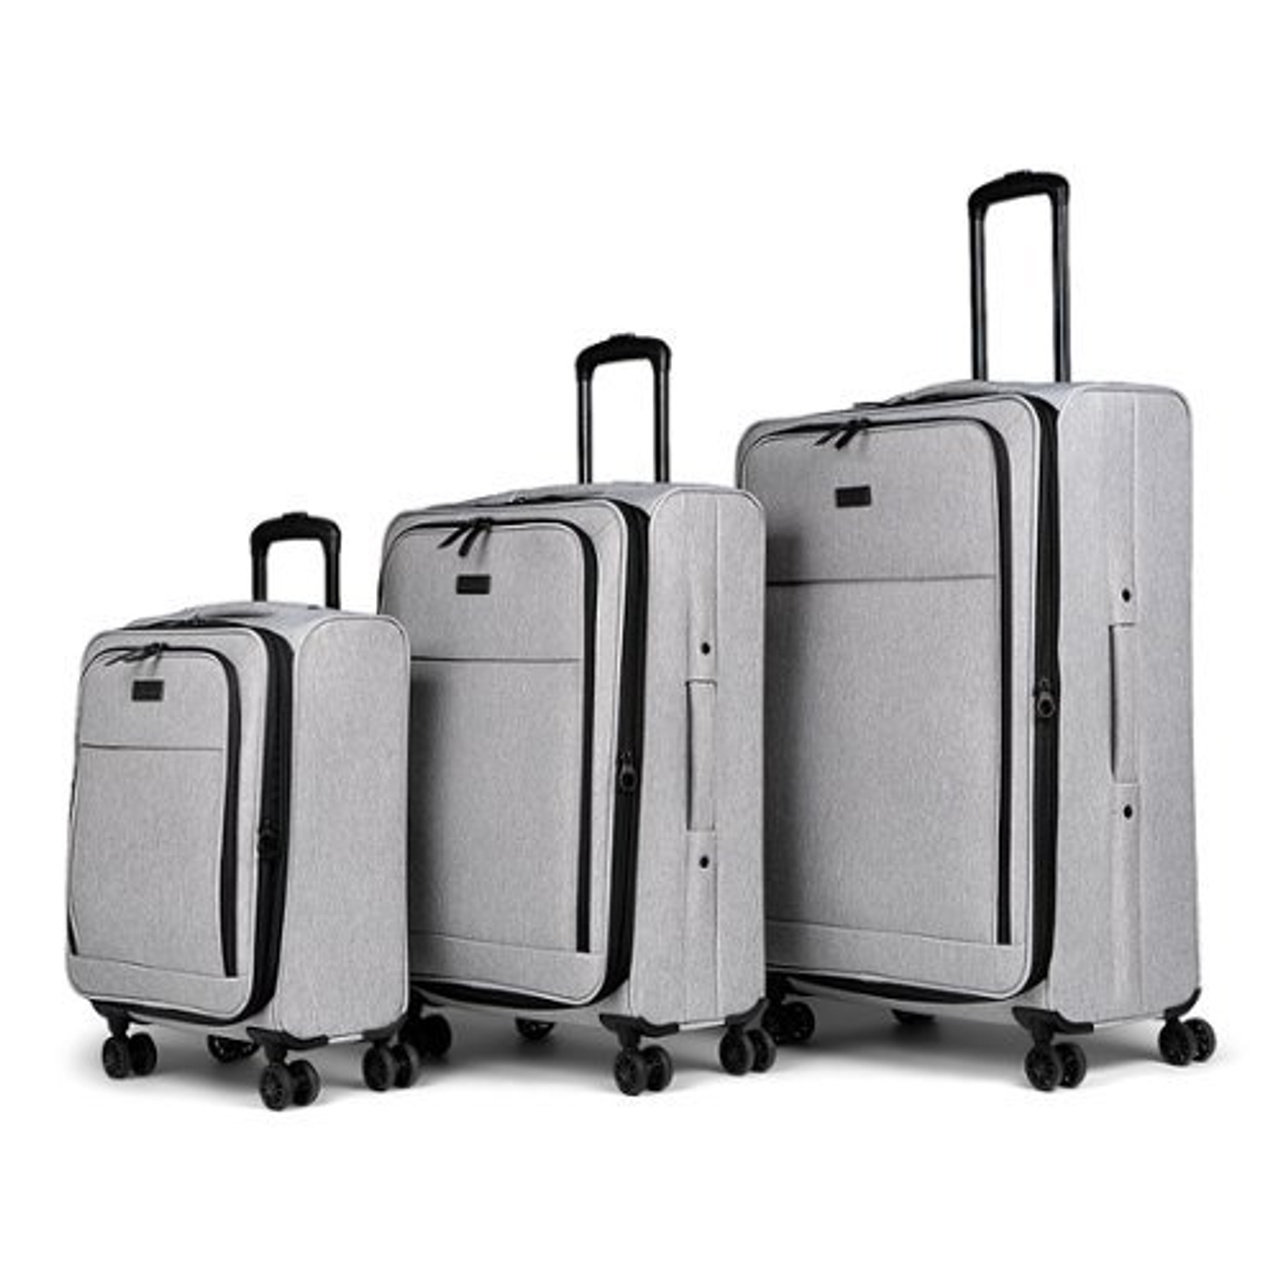 REBORN - Bugatti - 3 pcs Luggage set - RPET - Gray